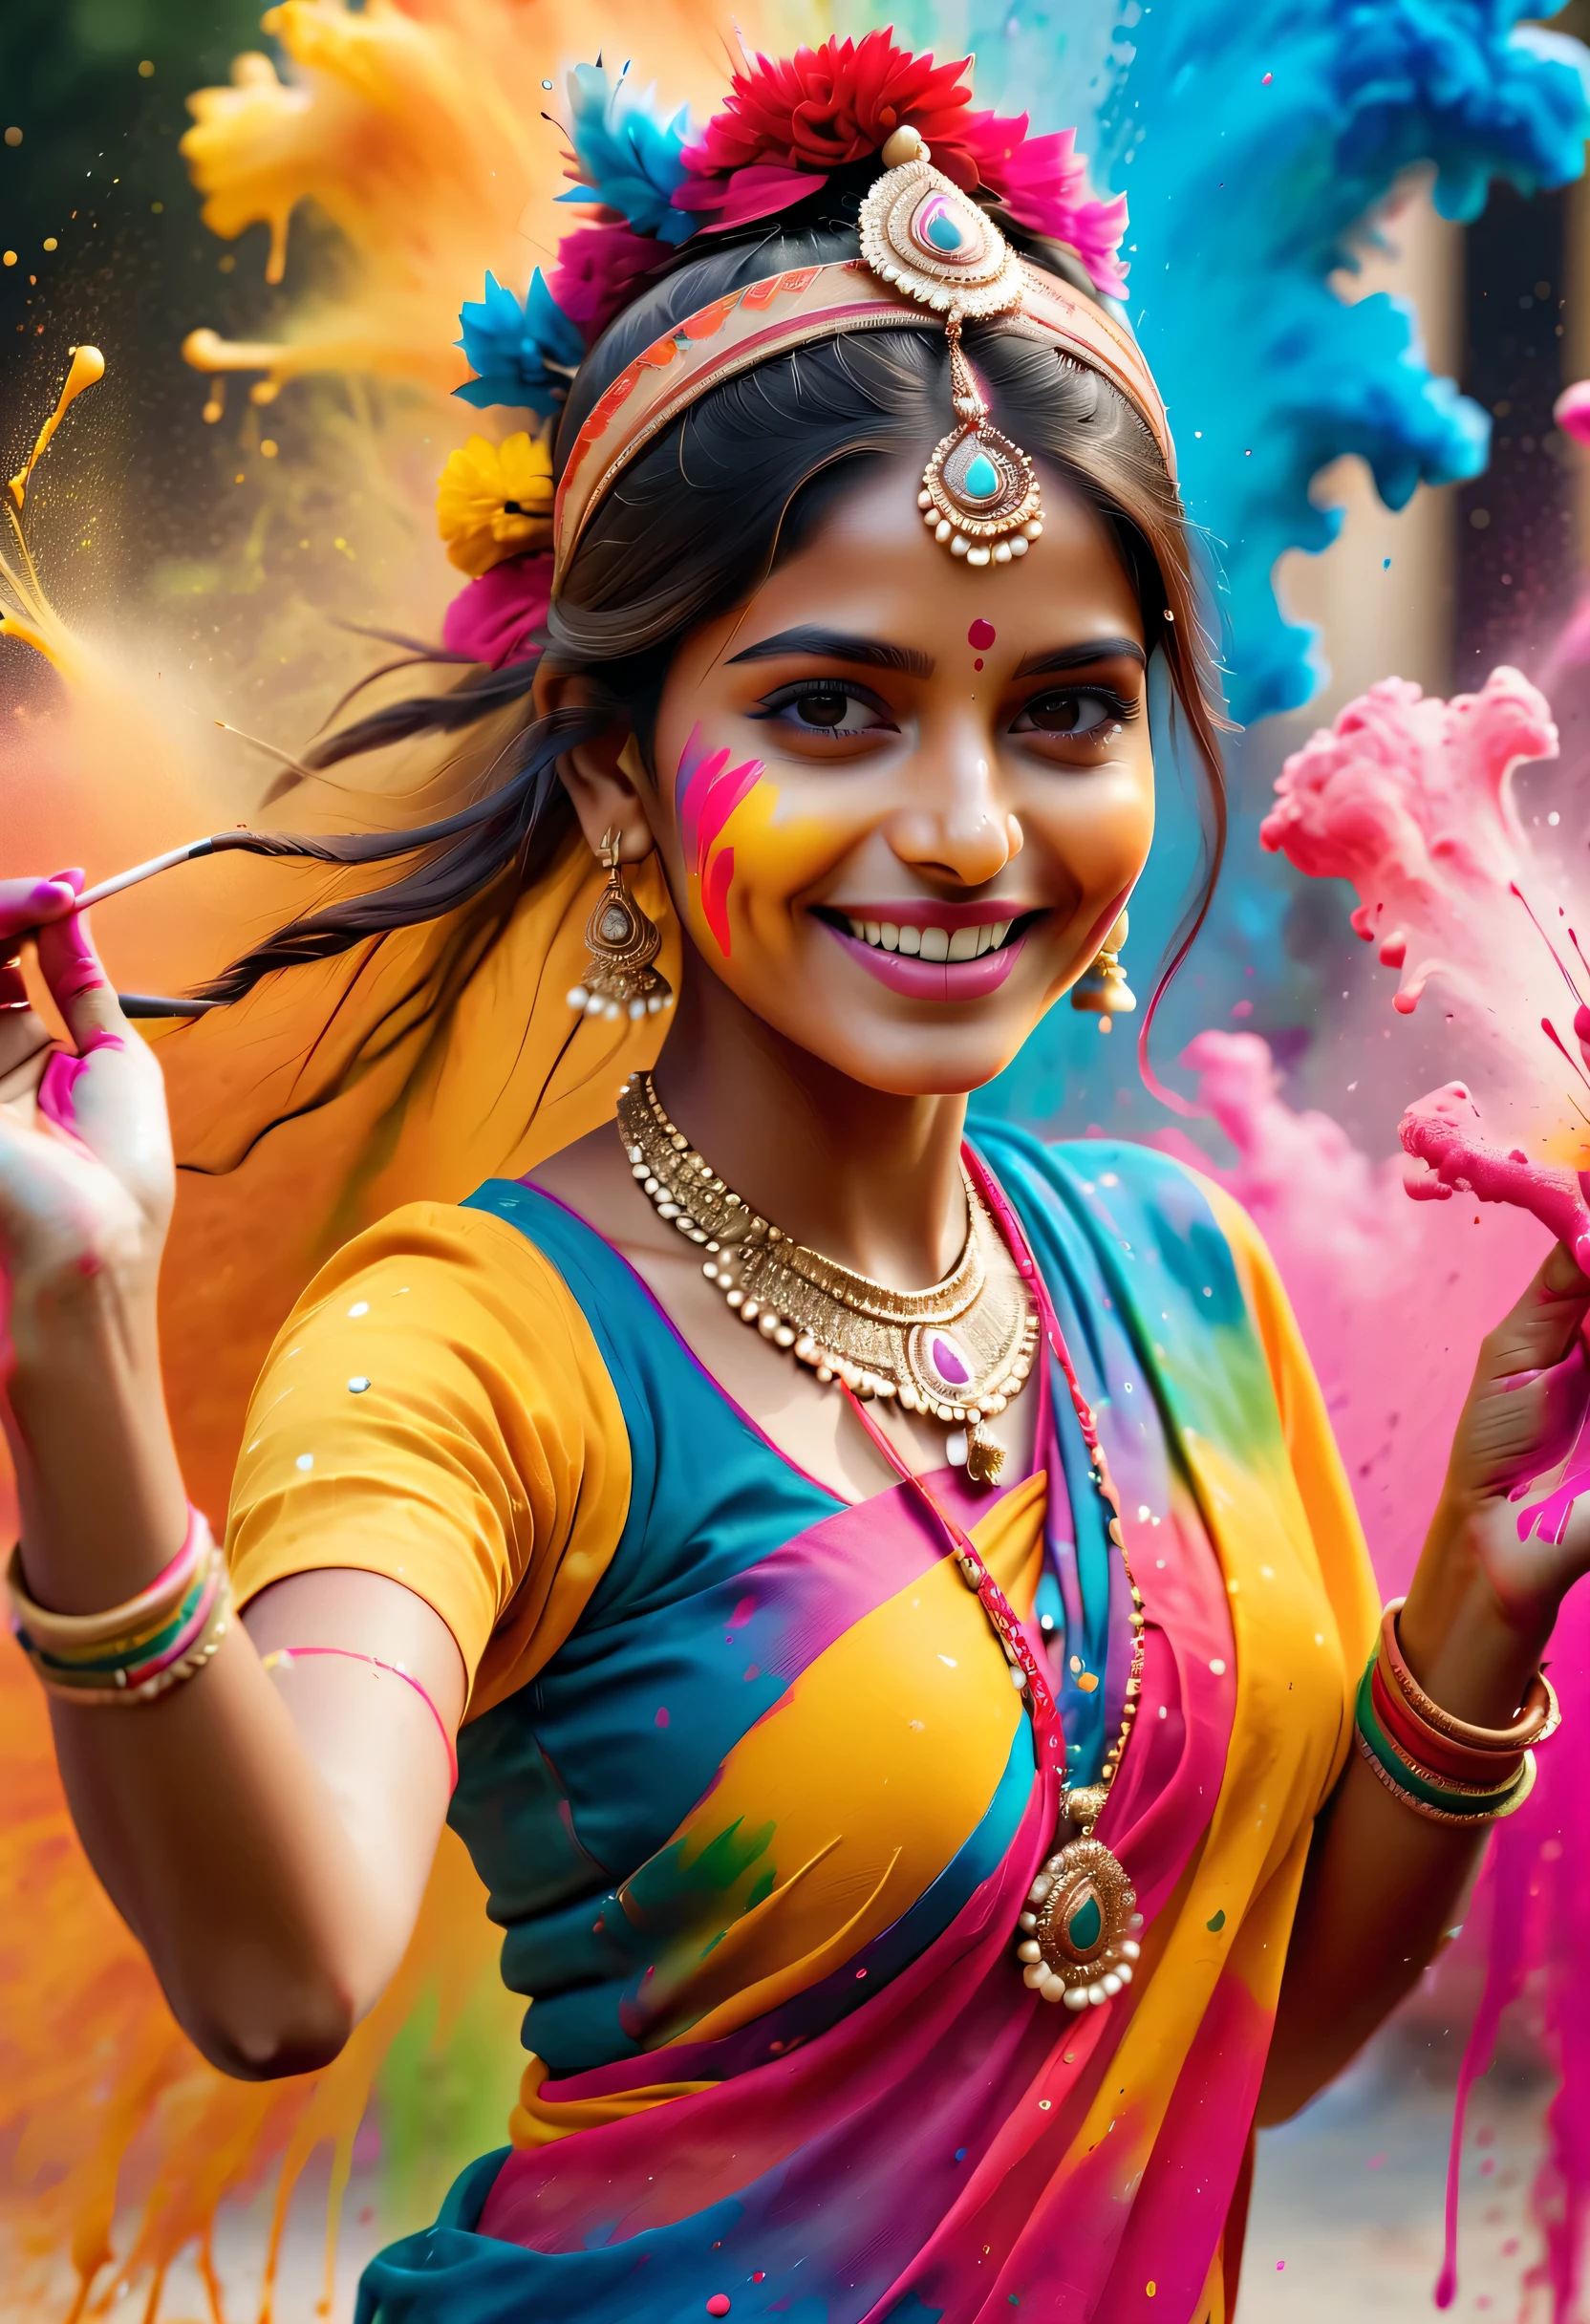 (最佳畫質，4k,8K，高畫質，傑作:1.2)，超詳細，(逼真，逼真，逼真:1.37)。印度節日，繪畫節，潑漆：1.37.美麗的印度女孩，Face painted with 豐富多彩的 paint，金色的眼睛，精美的黄金首饰，快樂的，幸福，富有感染力的微笑，色彩繽紛的服裝，彩色指甲，身上被潑漆，Splashing 豐富多彩的 paint at the event，油漆飛濺背景，彩色潑漆，充滿活力的運動，動態而有力的抽象藝術，豐富多彩的，丙烯，鮮豔的彩虹色調，幸福活泼的气氛，亮橘色，粉紅色的，異想天開又夢幻，自發性飛濺，大胆的色彩对比。